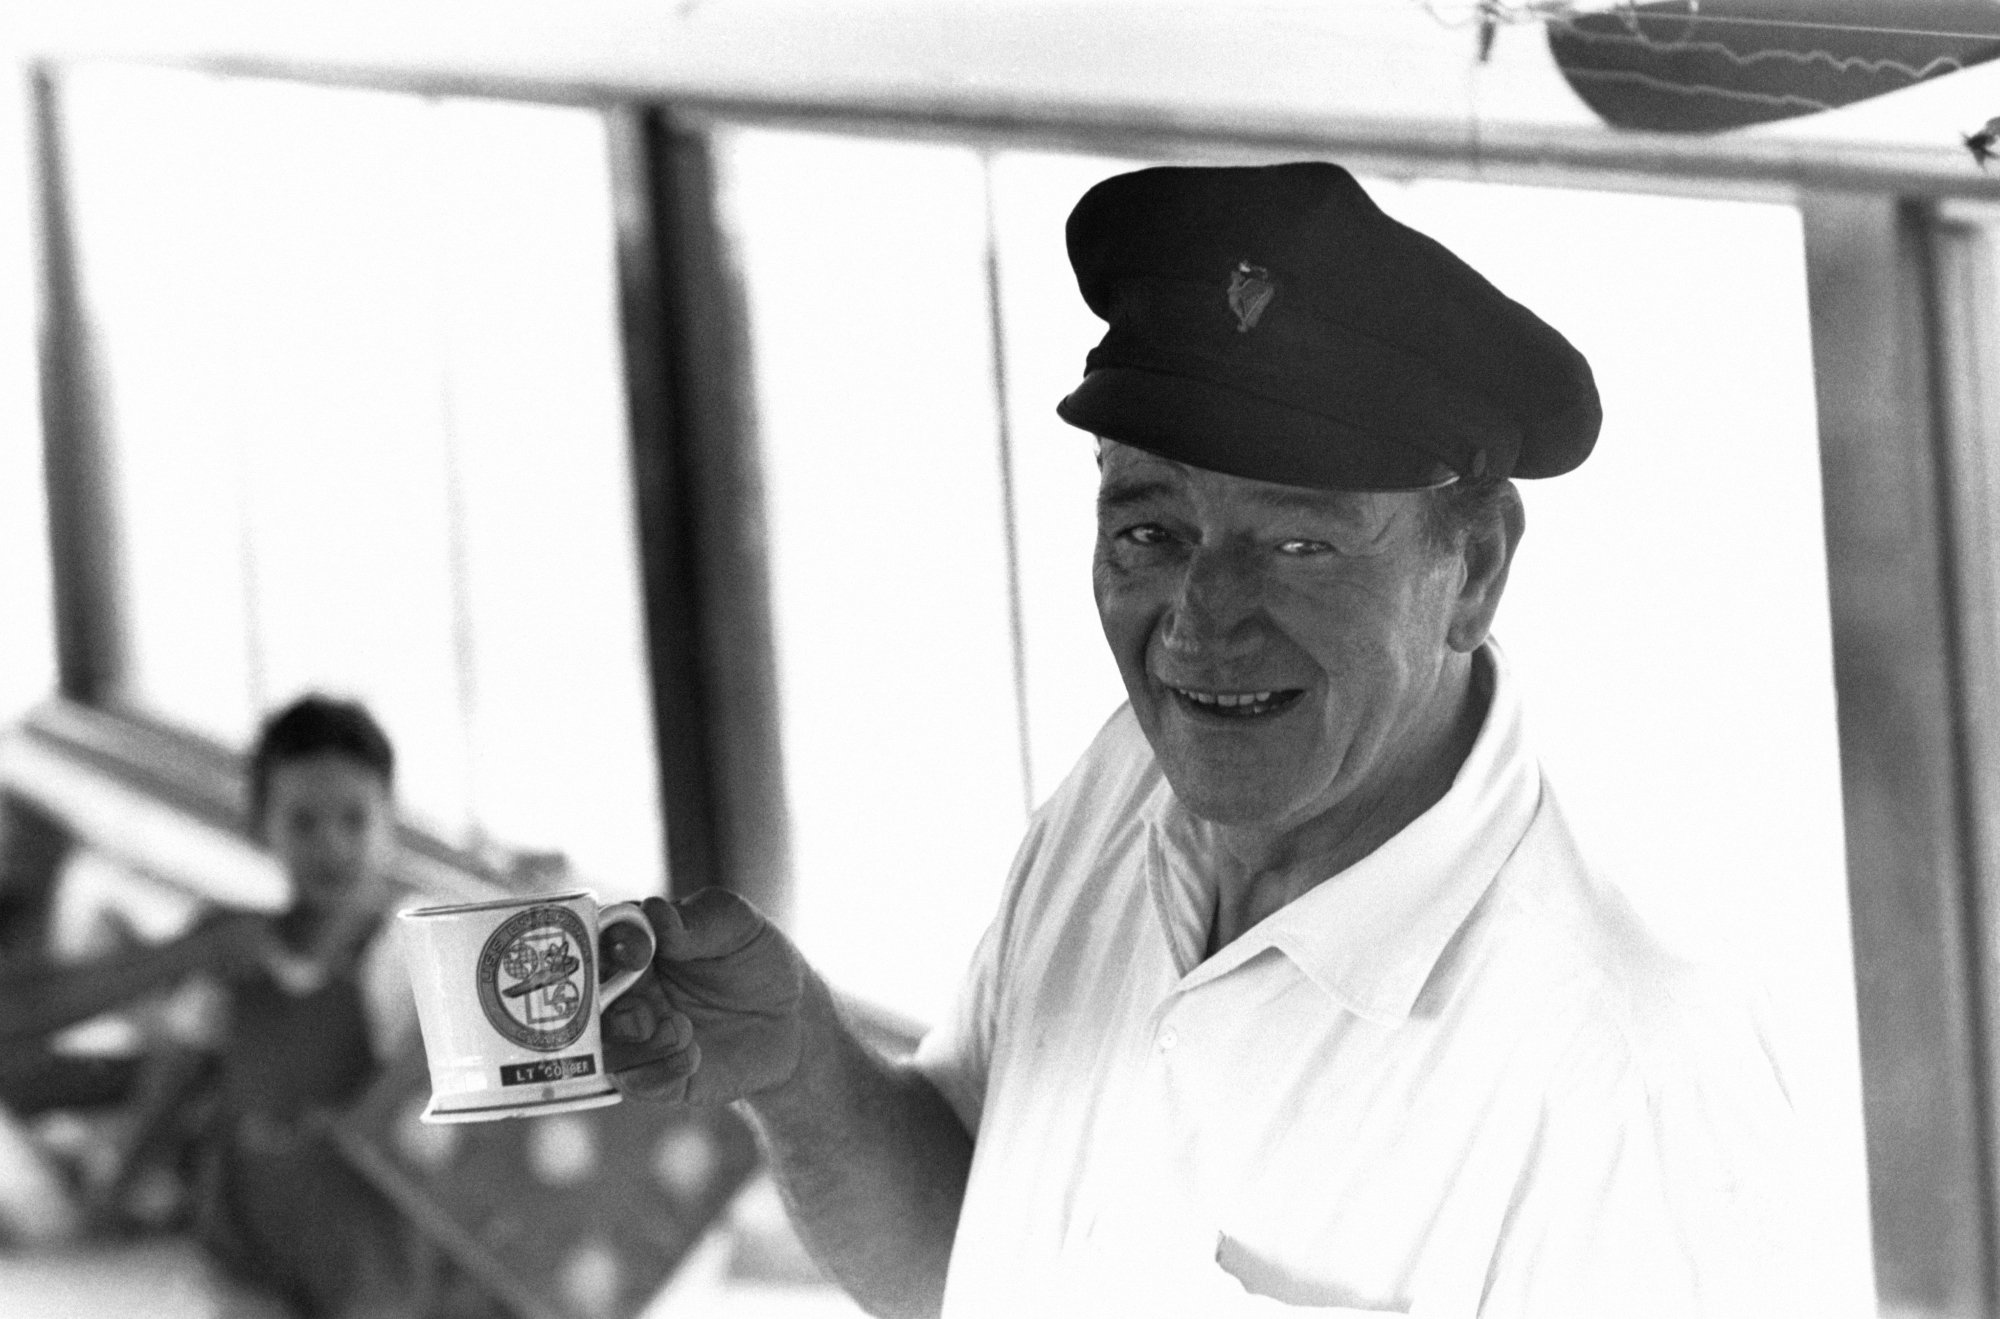 John Wayne, who frequently says 'pilgrim' holding a mug